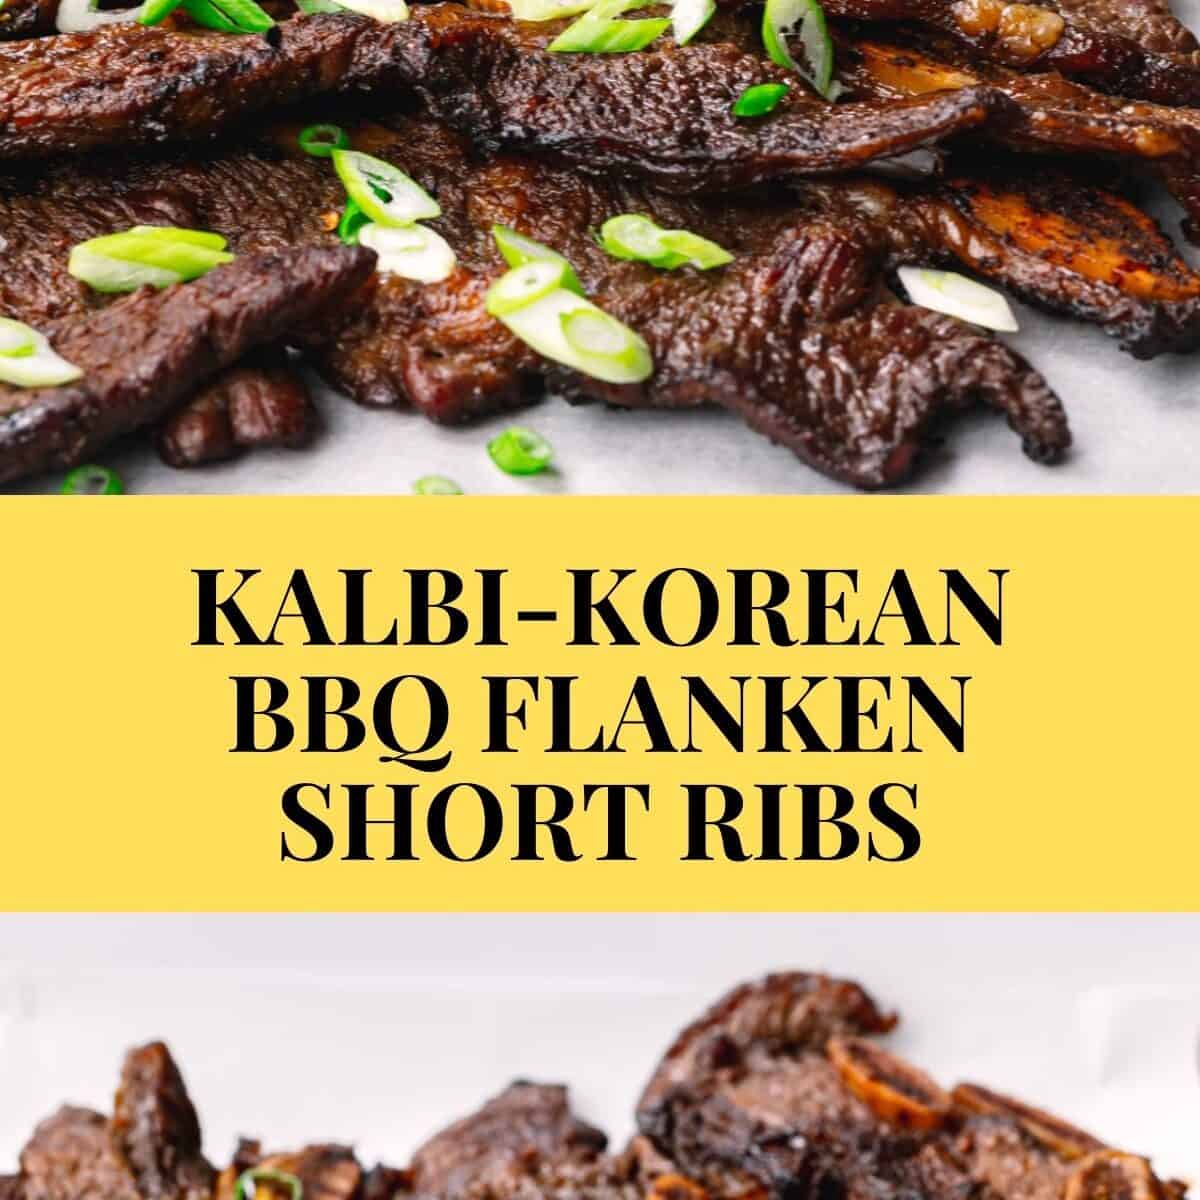 Kalbi Korean BBQ Flanken Short Ribs